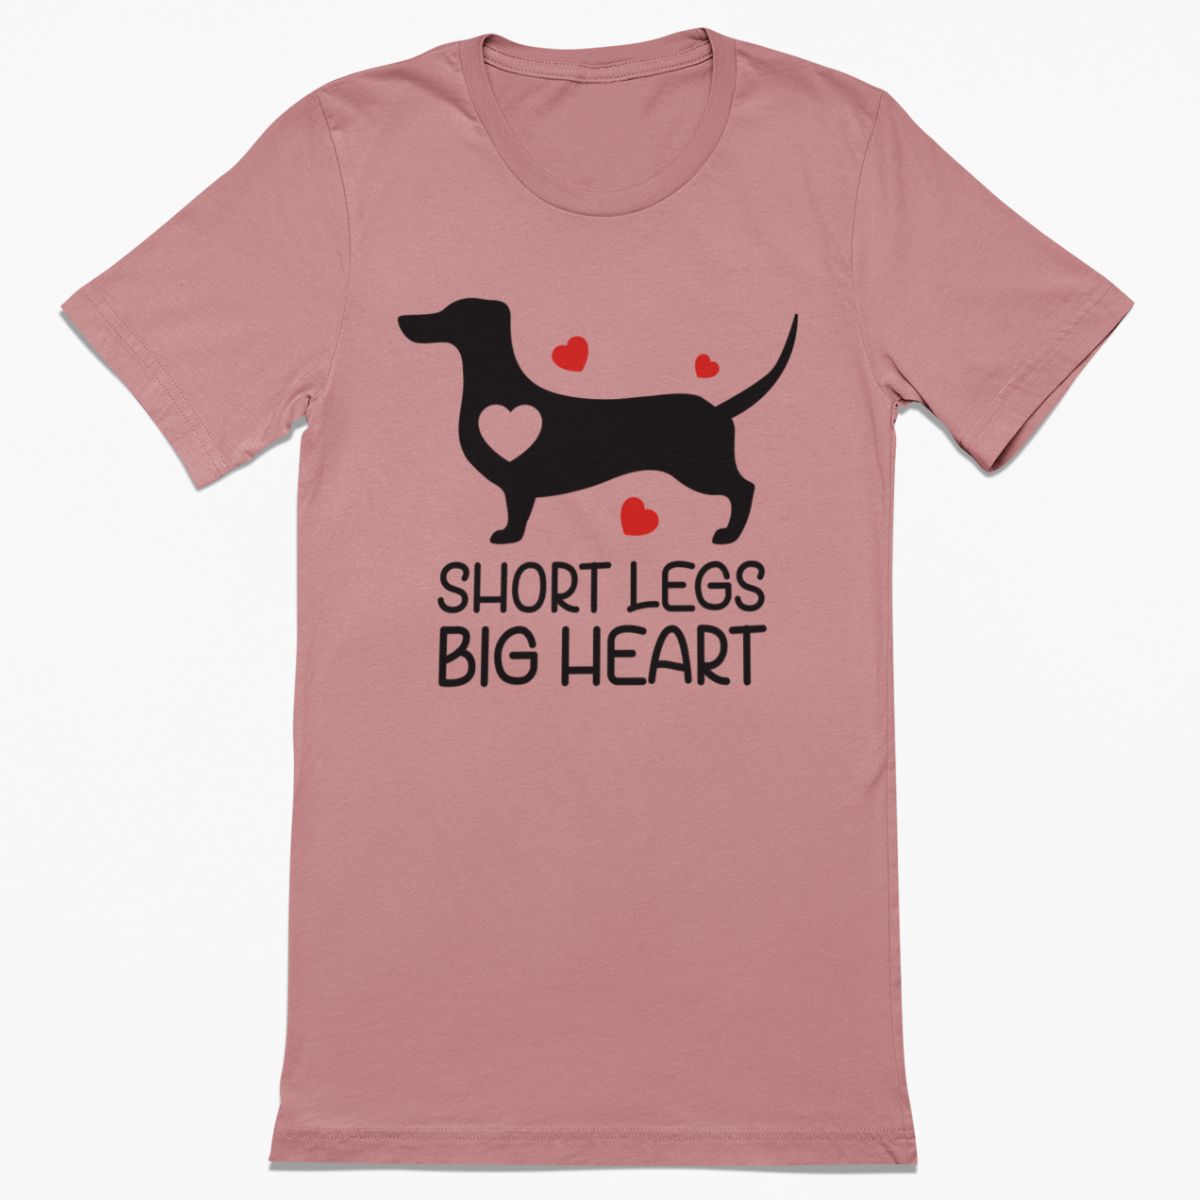 Short Legs Big Heart Shirt